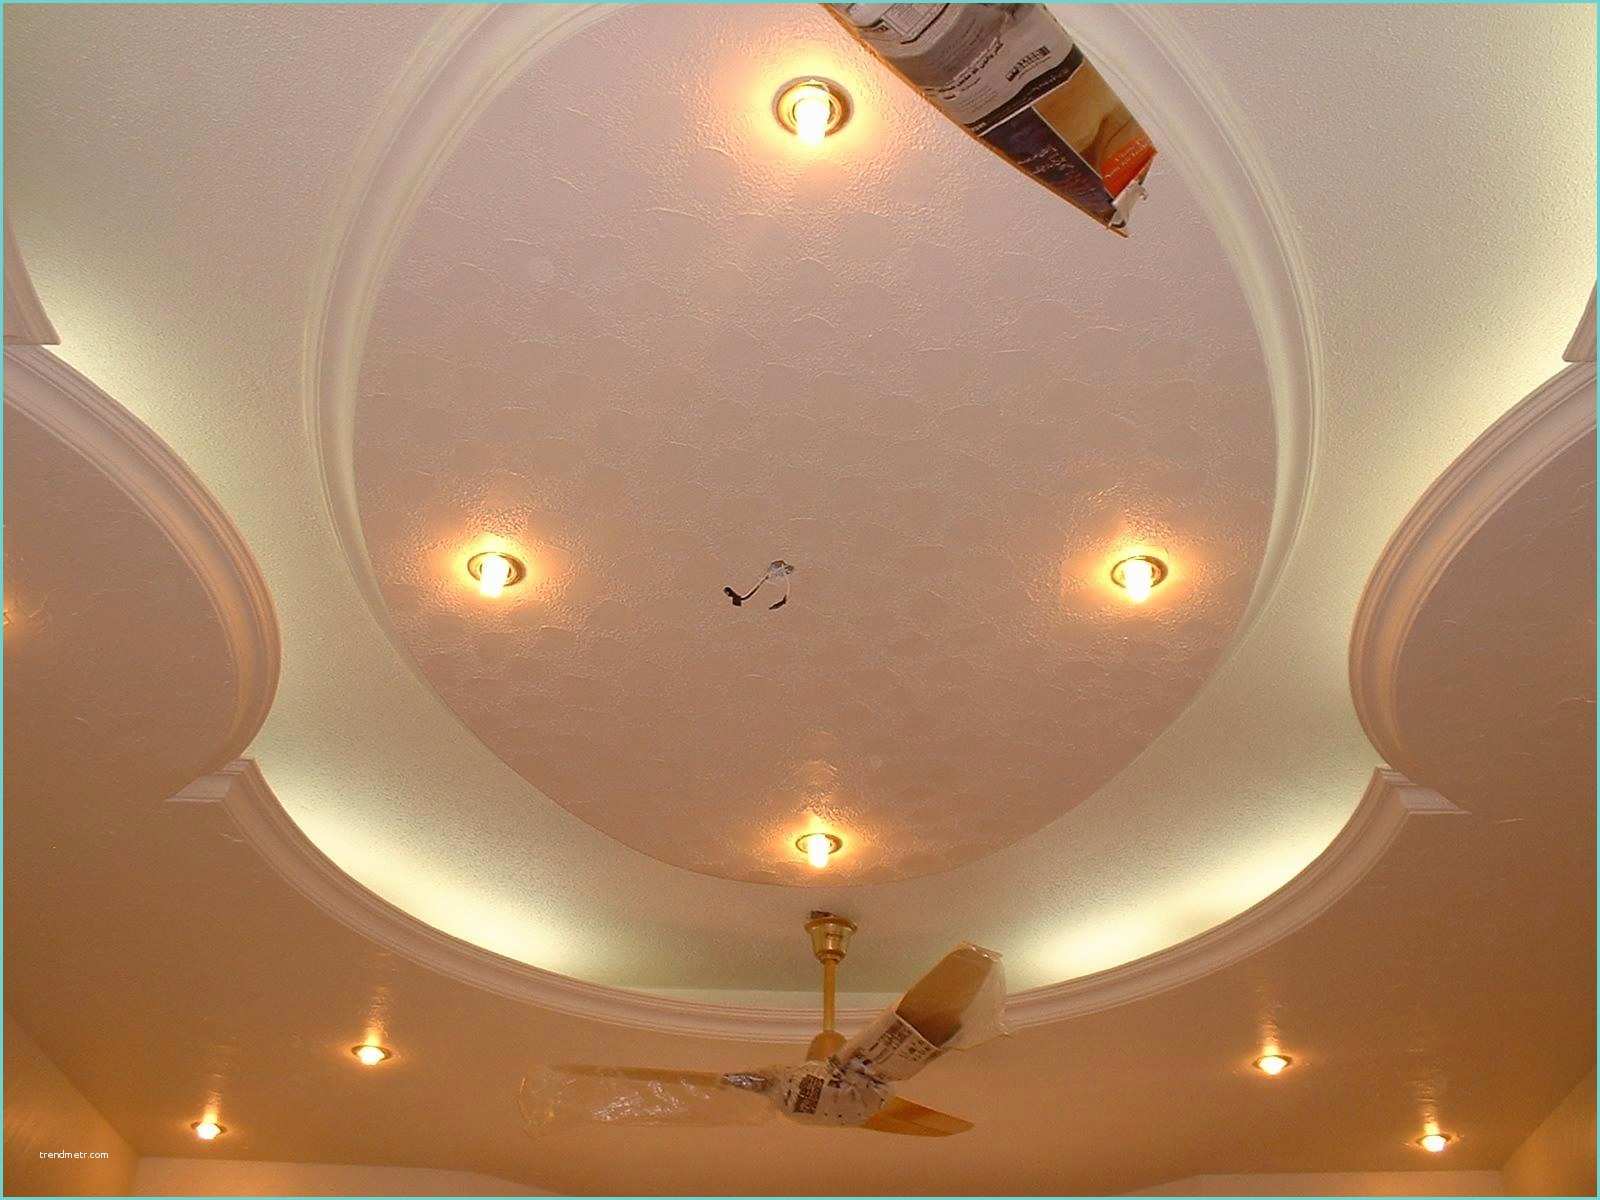 P O P Design Ceiling P O P Design In Ceiling Simple False Ceiling Designs